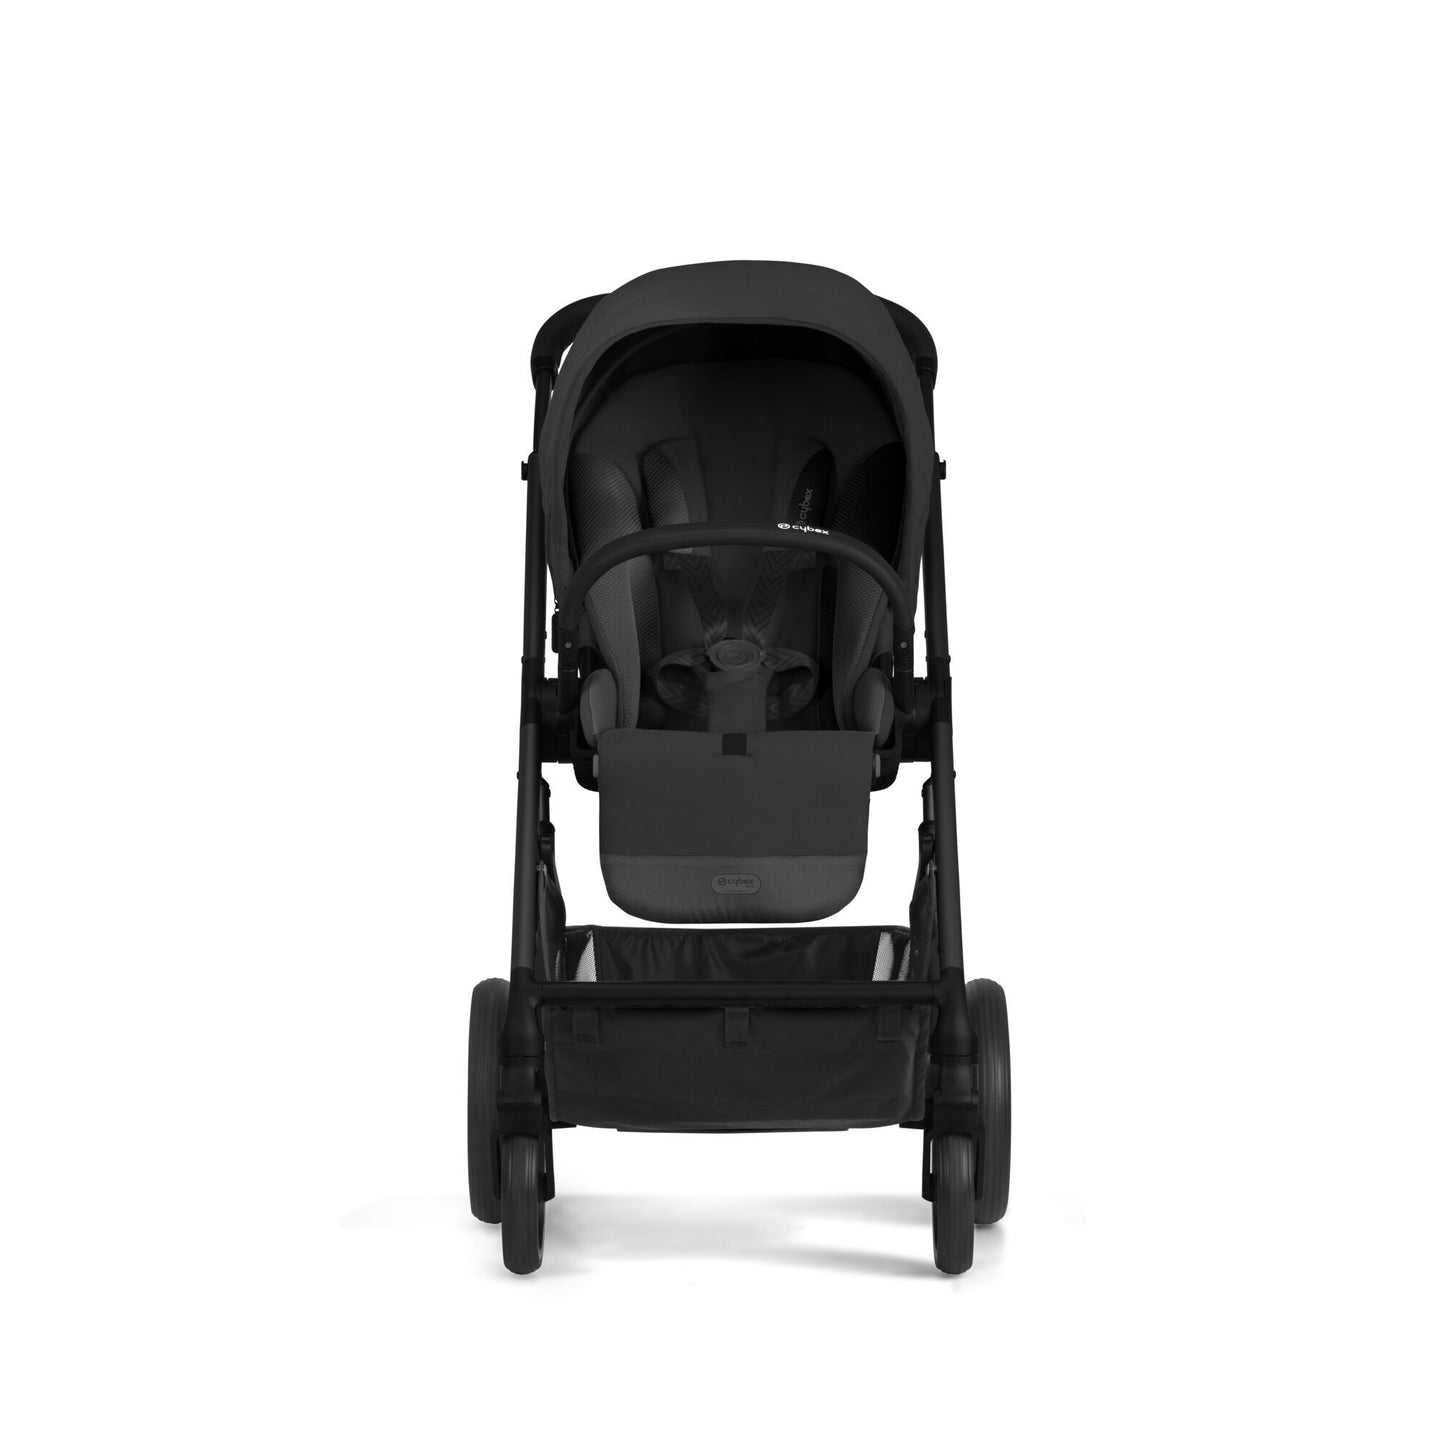 עגלת תינוק משולבת - טיולון ועריסה Balios S4 בצבע שחור Moon Black